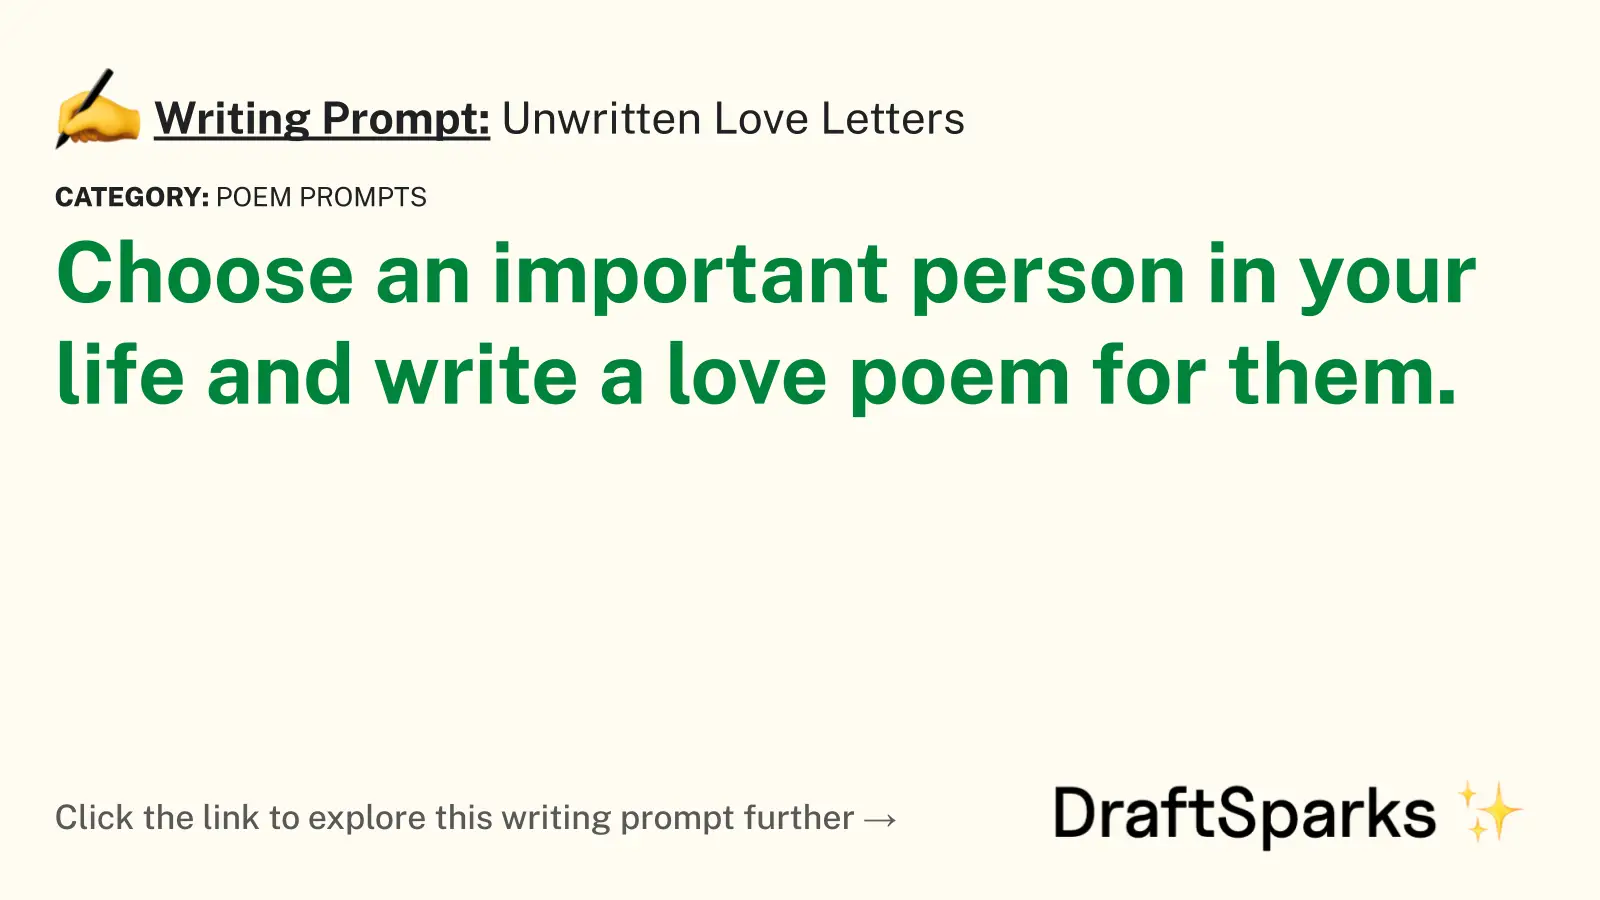 Unwritten Love Letters